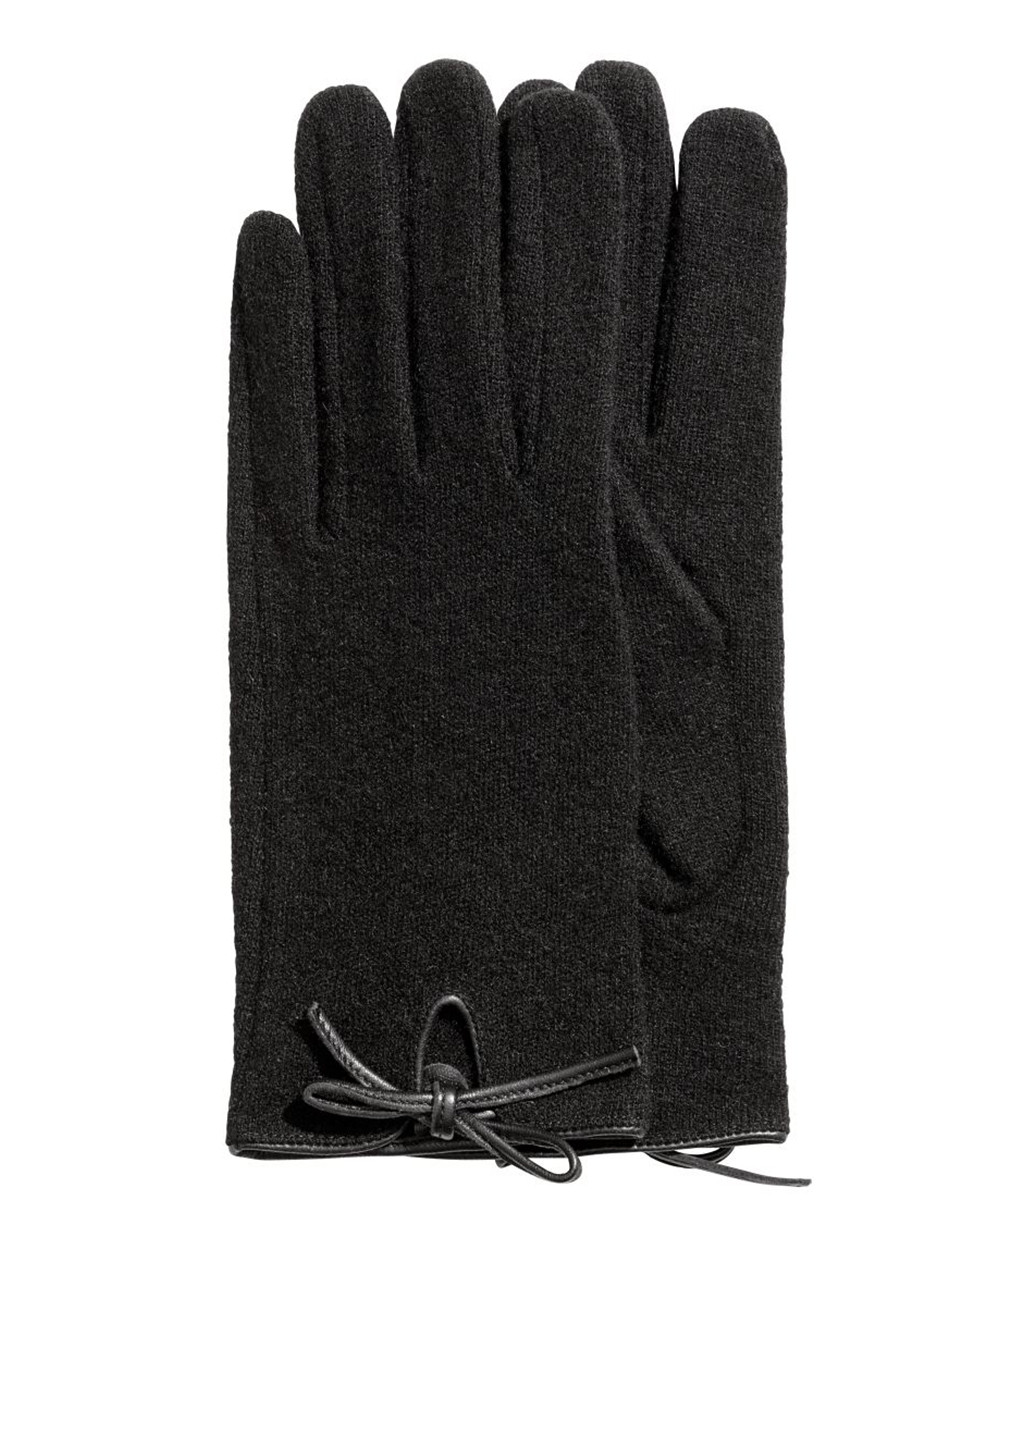 Перчатки H&M однотонные чёрные кэжуалы шерсть, полиамид